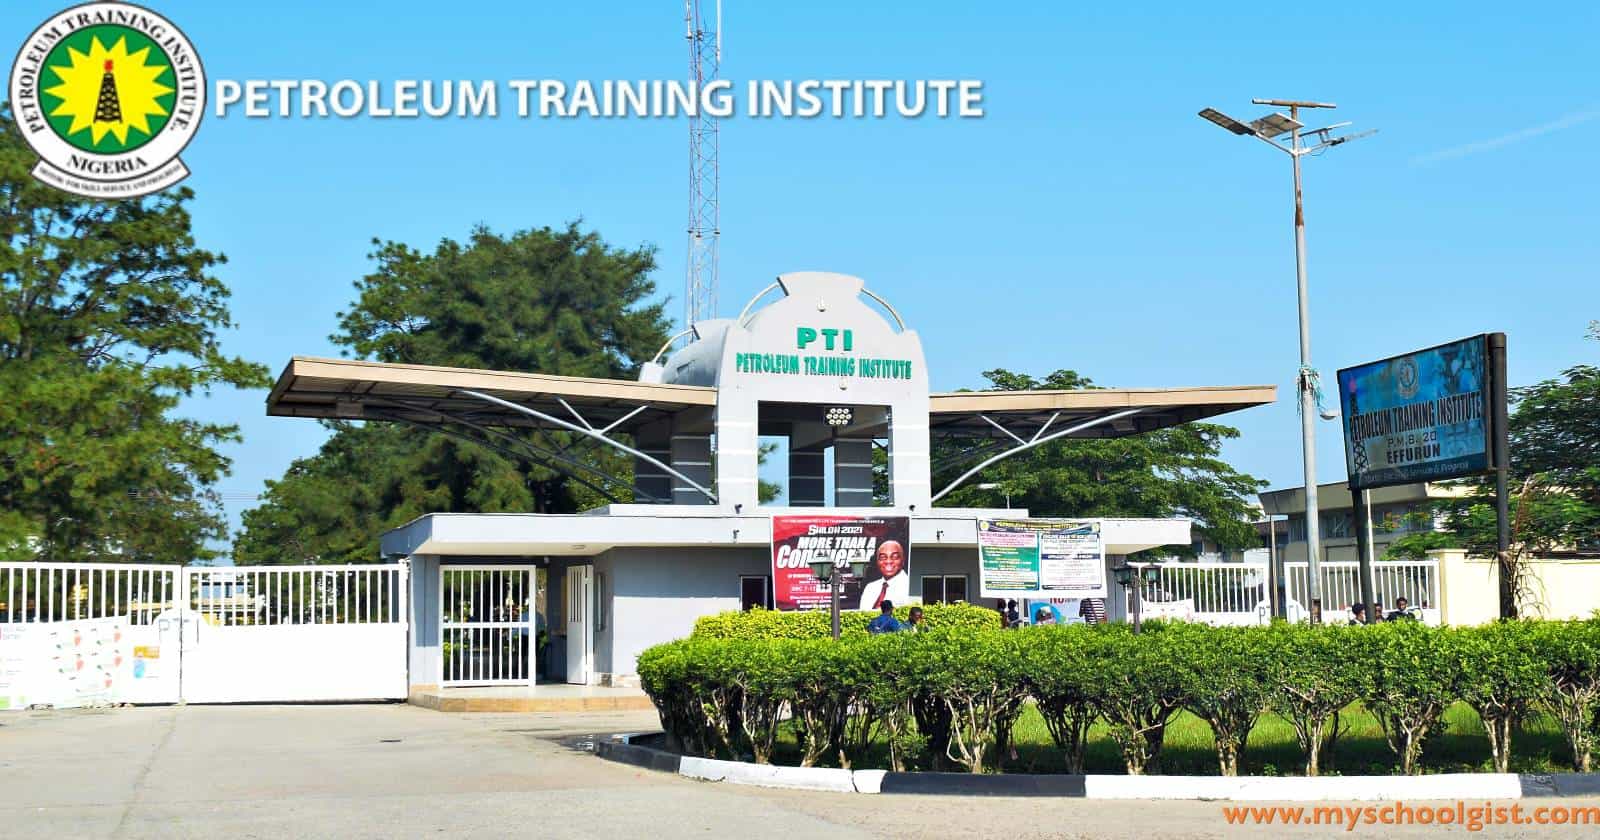 Registration for Petroleum Training Institute (PTI) Courses